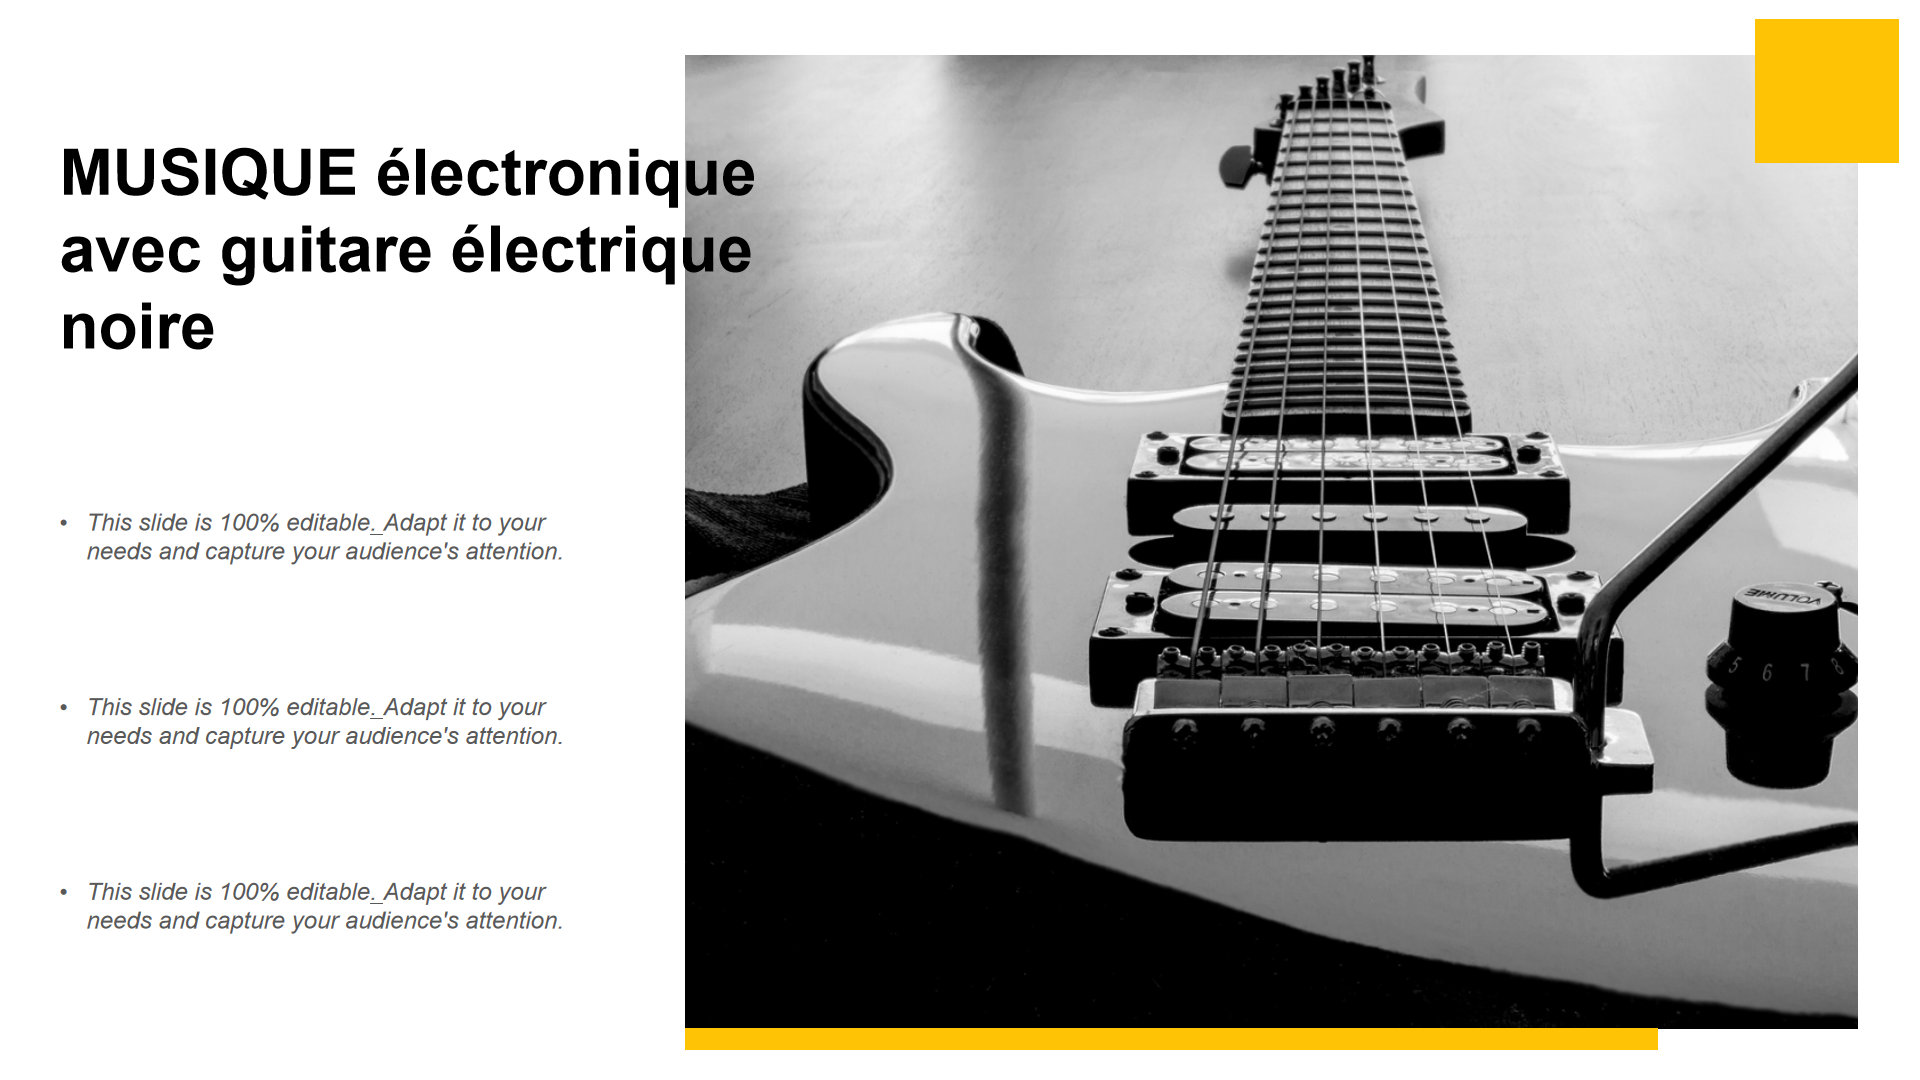 MUSIQUE électronique avec guitare électrique noire